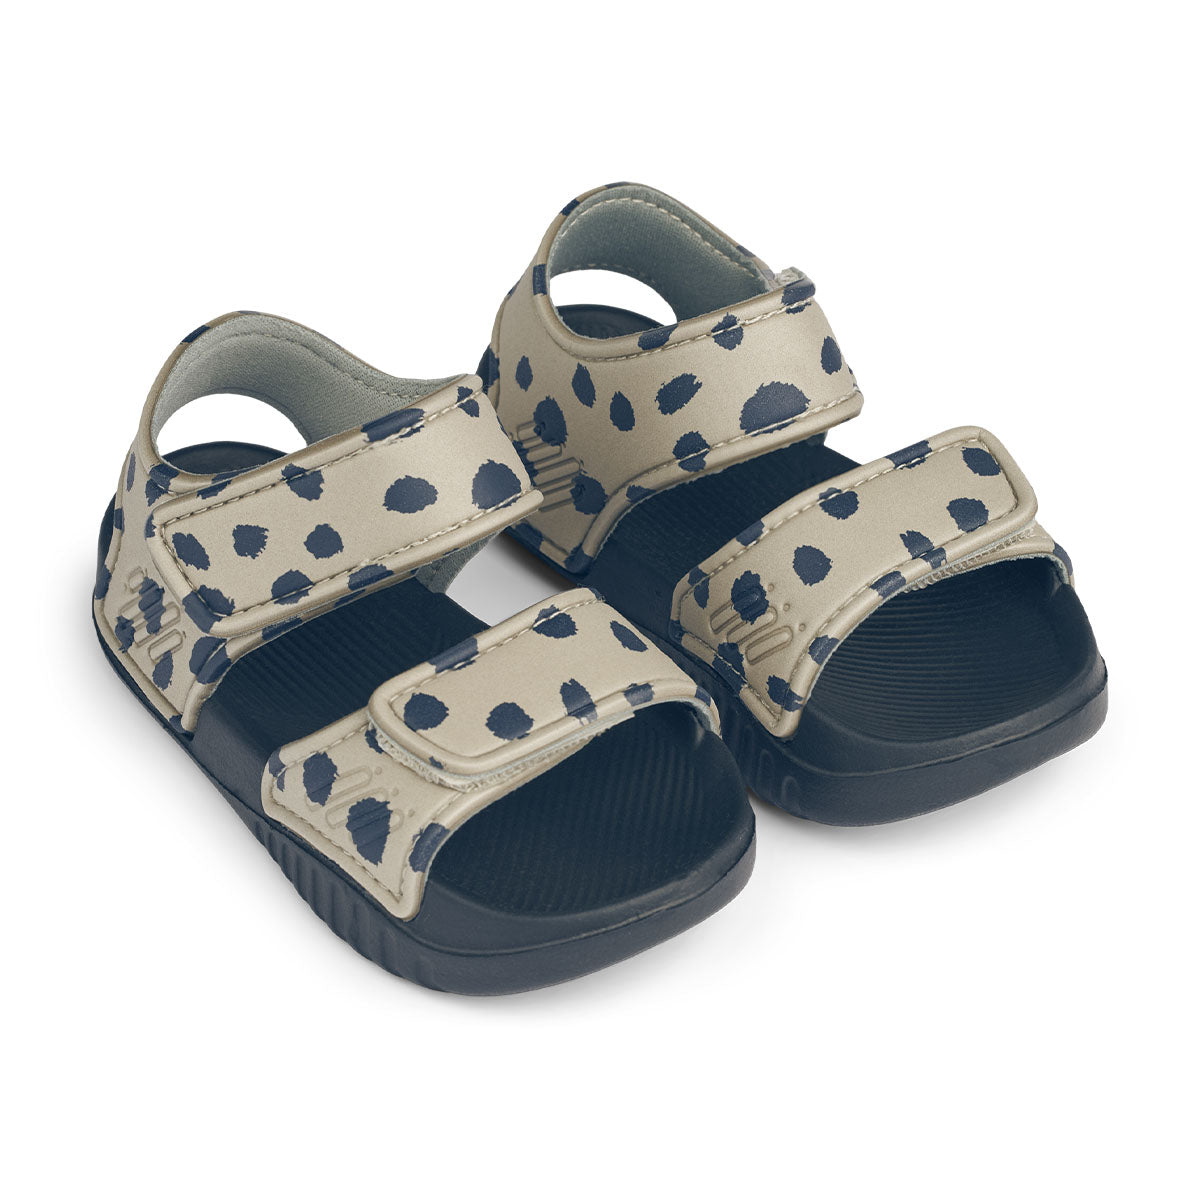 Ben je op zoek naar praktische én leuk uitziende sandalen? Dan zijn deze blumer sandalen van Liewood in leo spots/mist ideaal! Deze sandalen zitten namelijk enorm comfortabel, maar zien er ook stijlvol uit. Deze toffe sandaaltjes zullen supercomfortabel zitten bij je kleintje. 